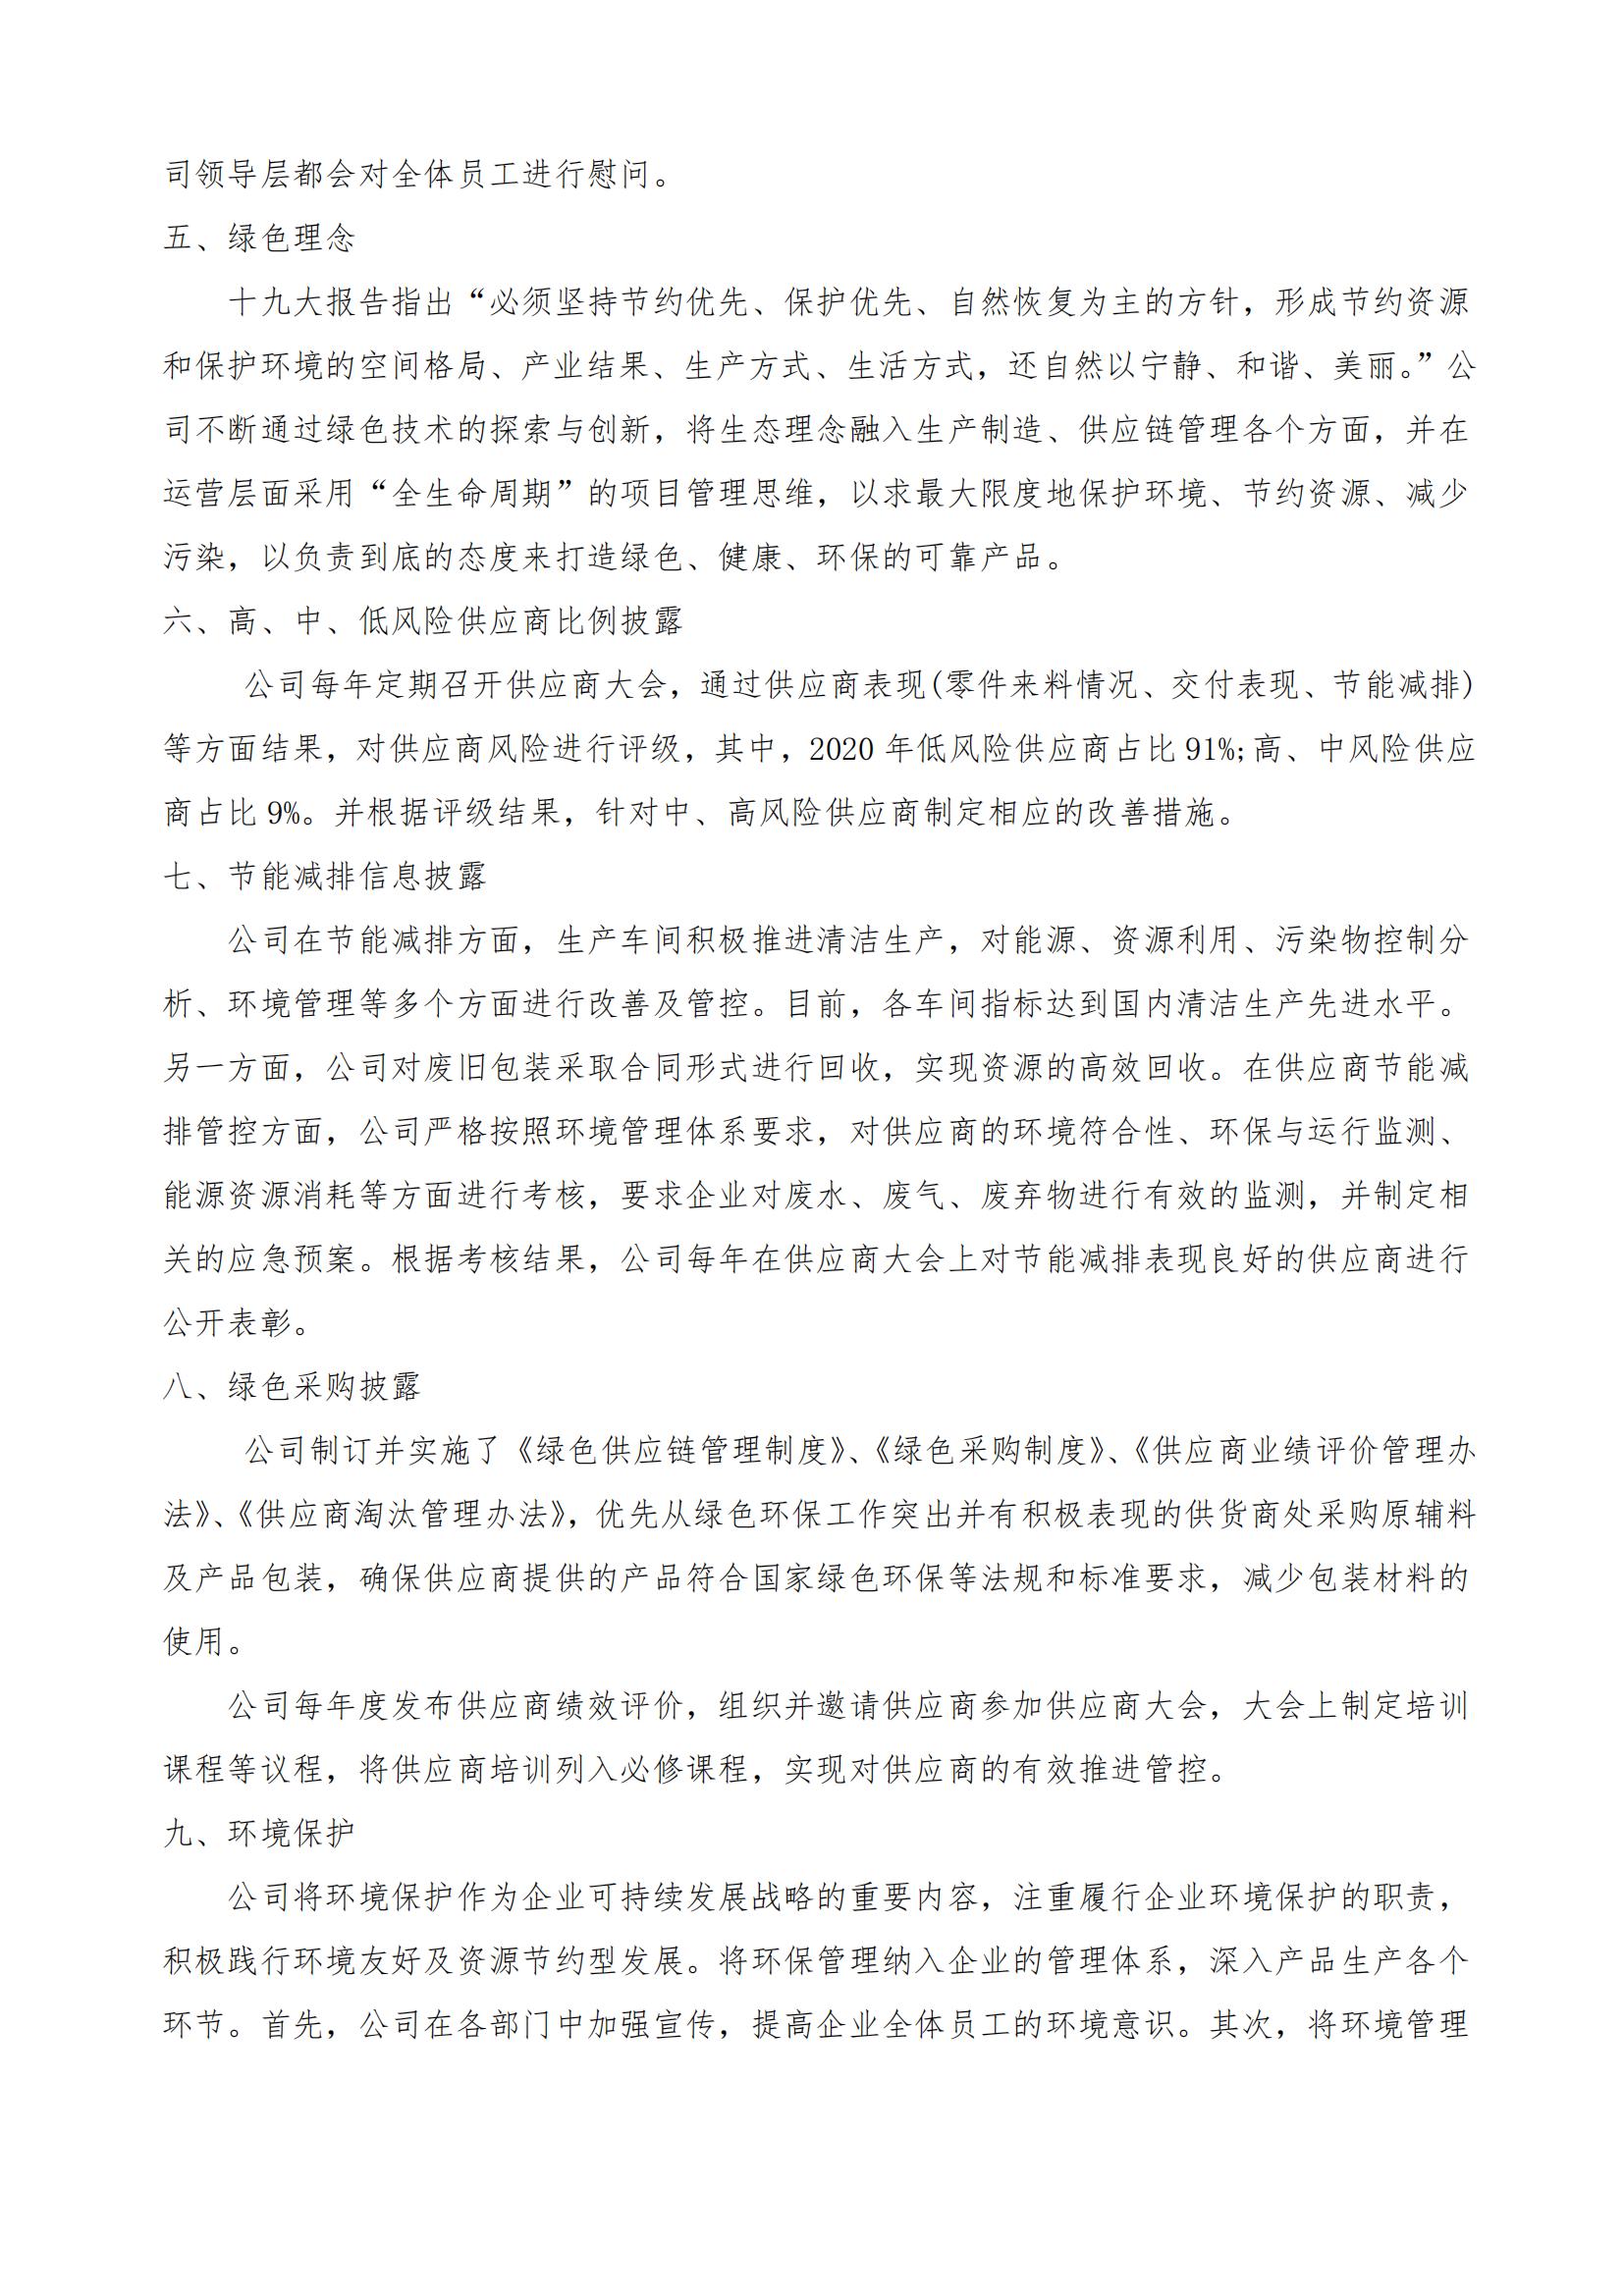 川珍实业公司——社会责任报告(图2)